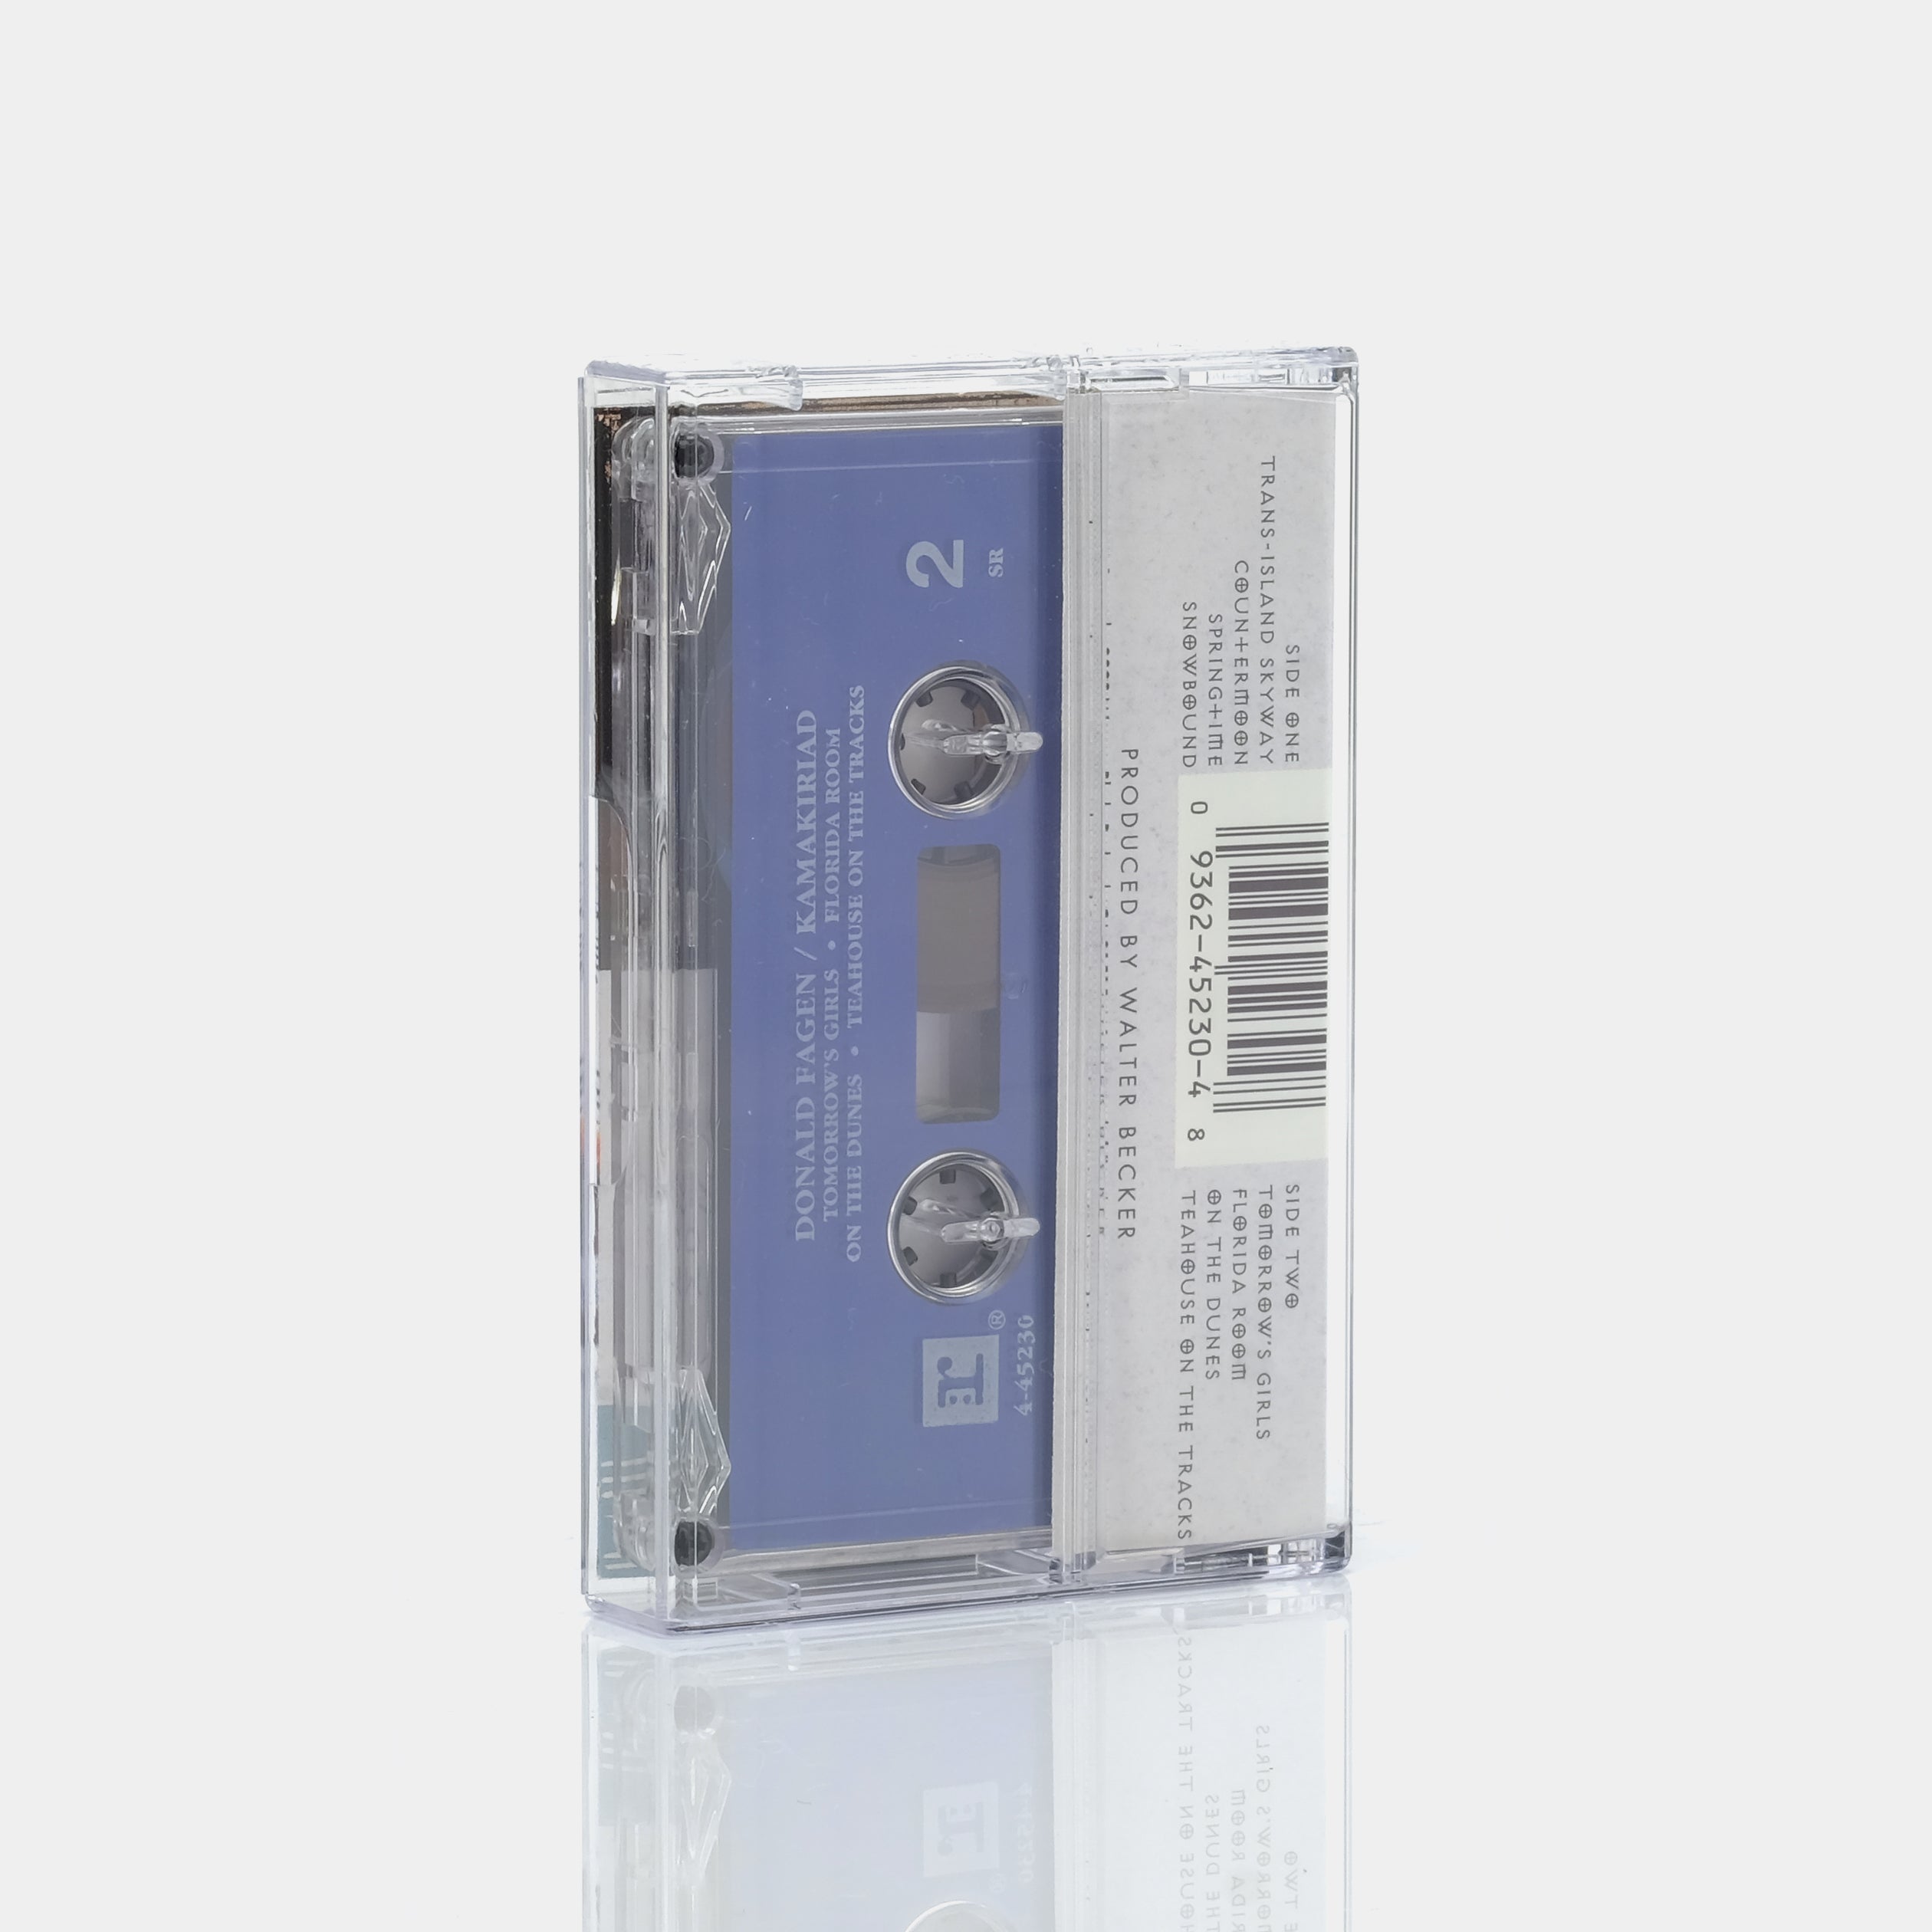 Donald Fagen - Kamakiriad Cassette Tape